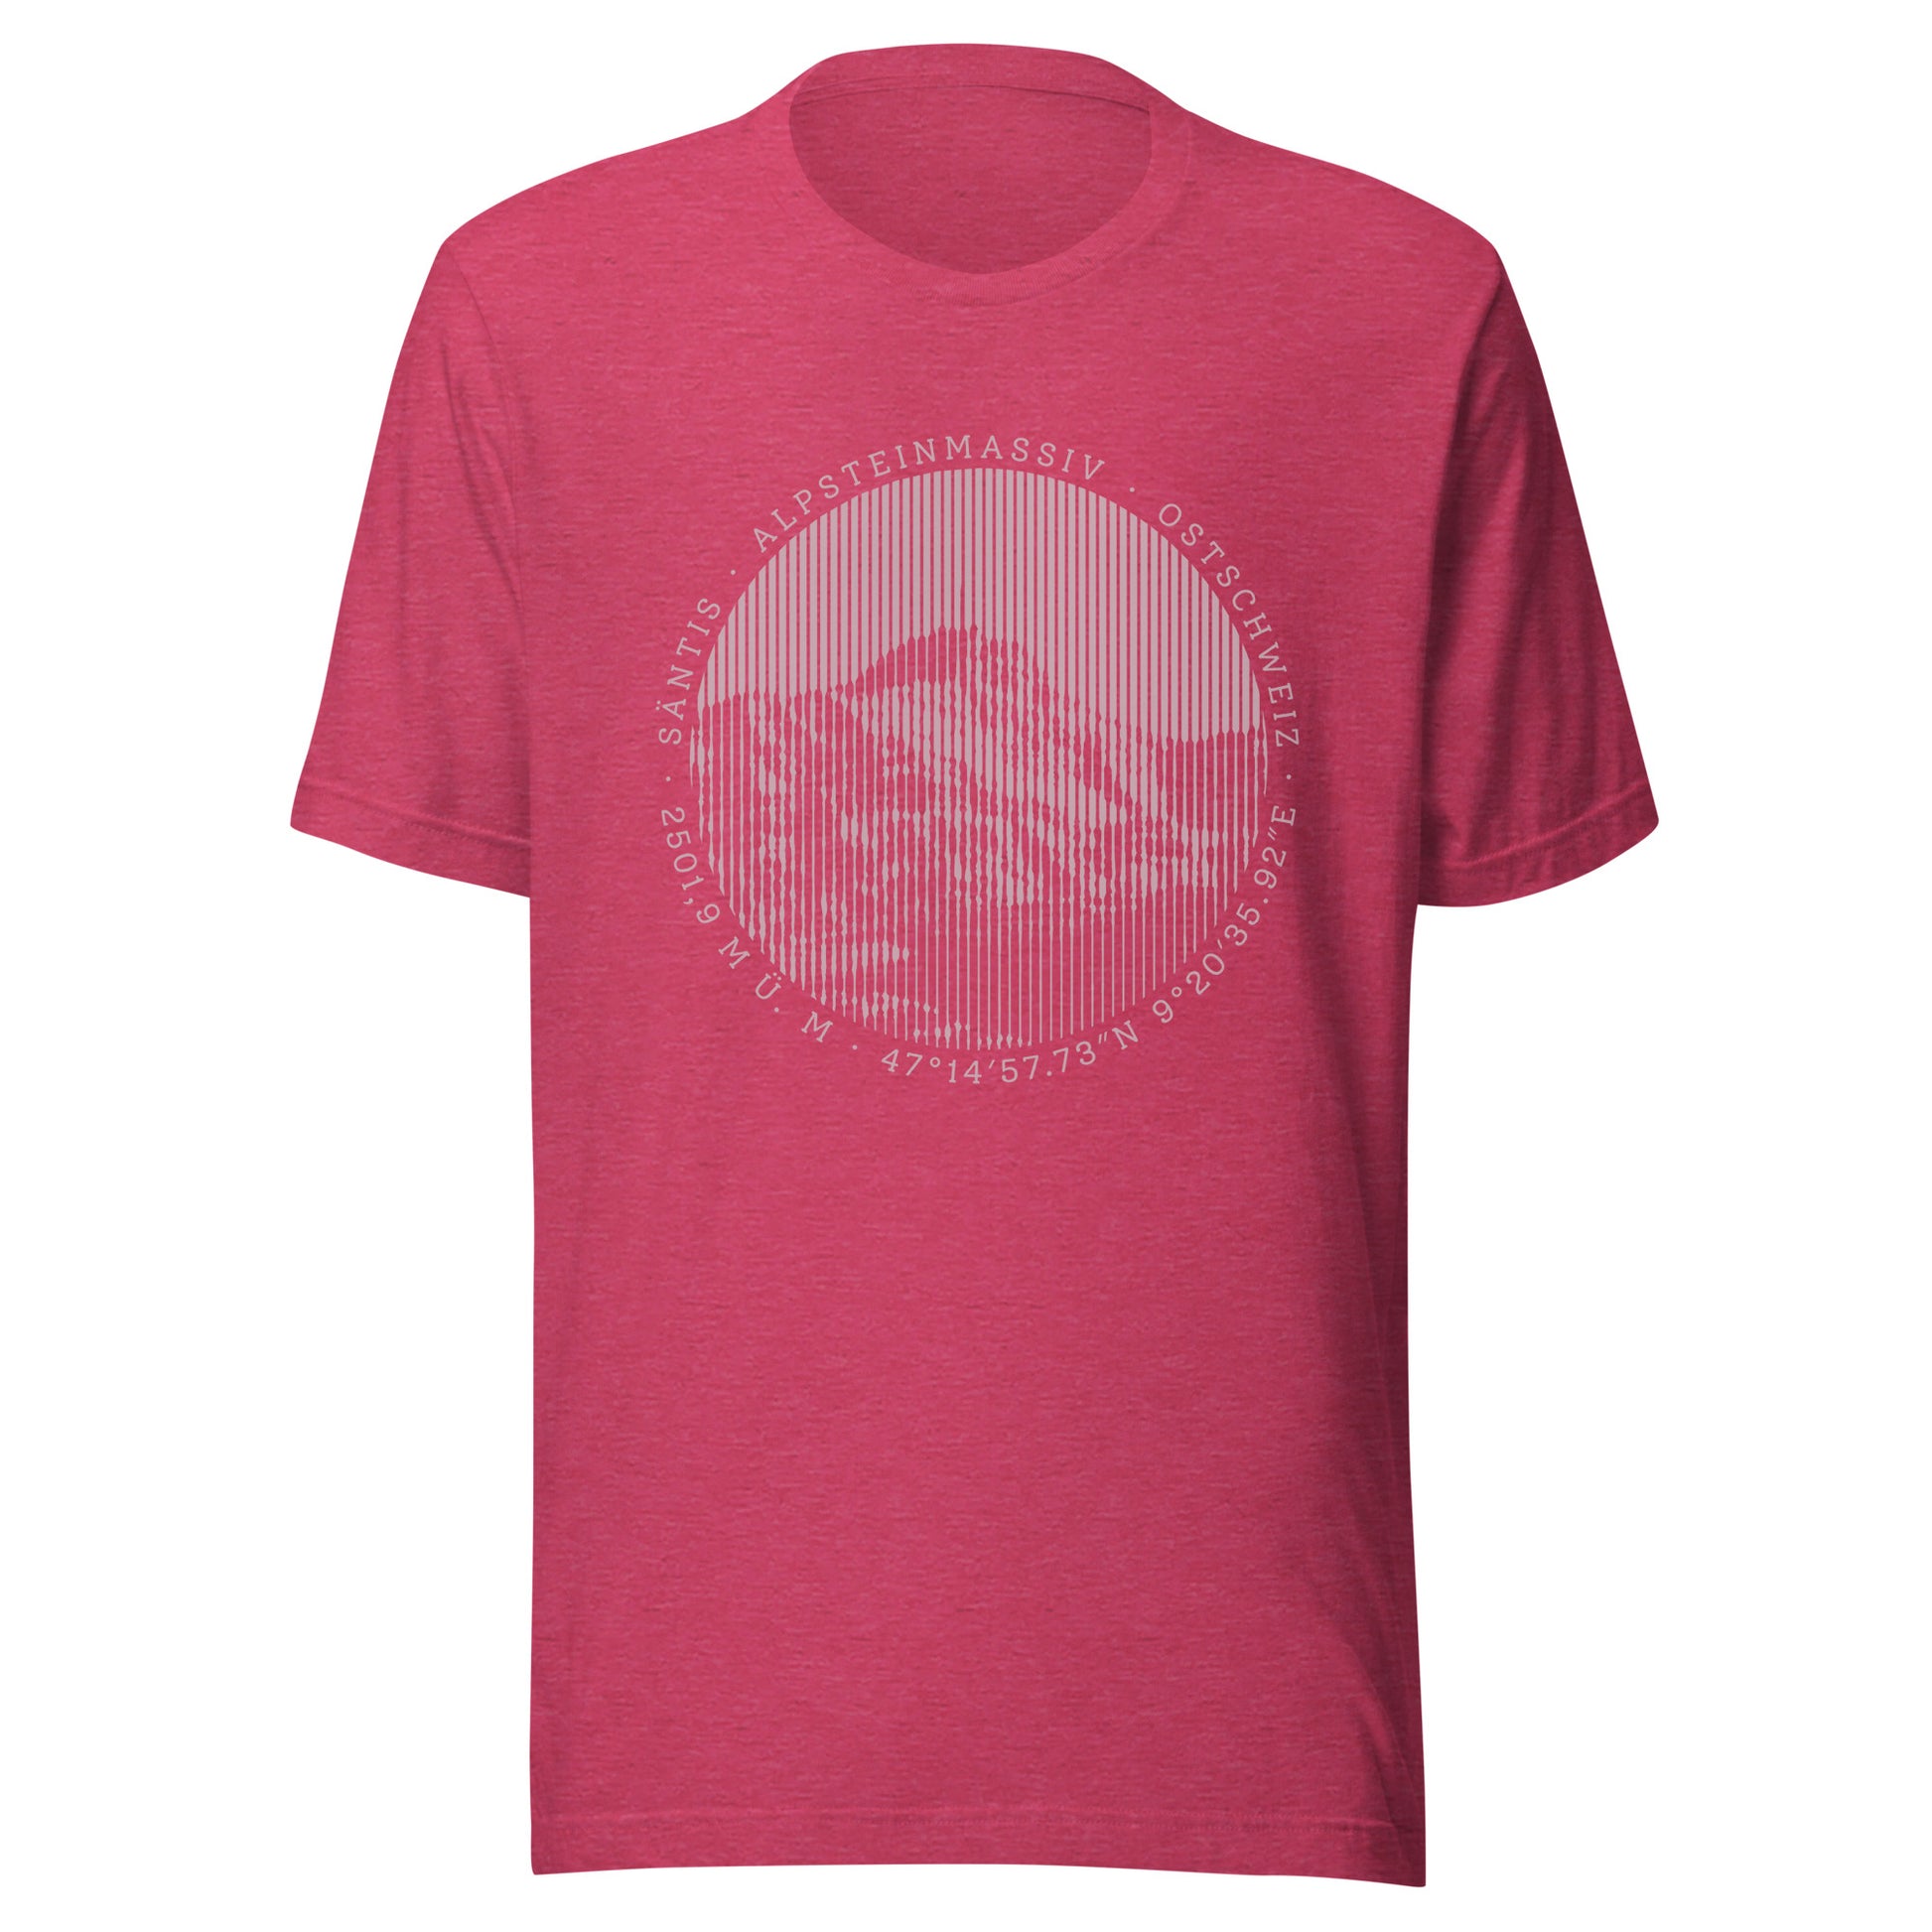 Rotes Damen T-Shirt. Der Print zeigt den Säntis, einen legendären Berggipfel in den Appenzeller Alpen in der Ostschweiz.